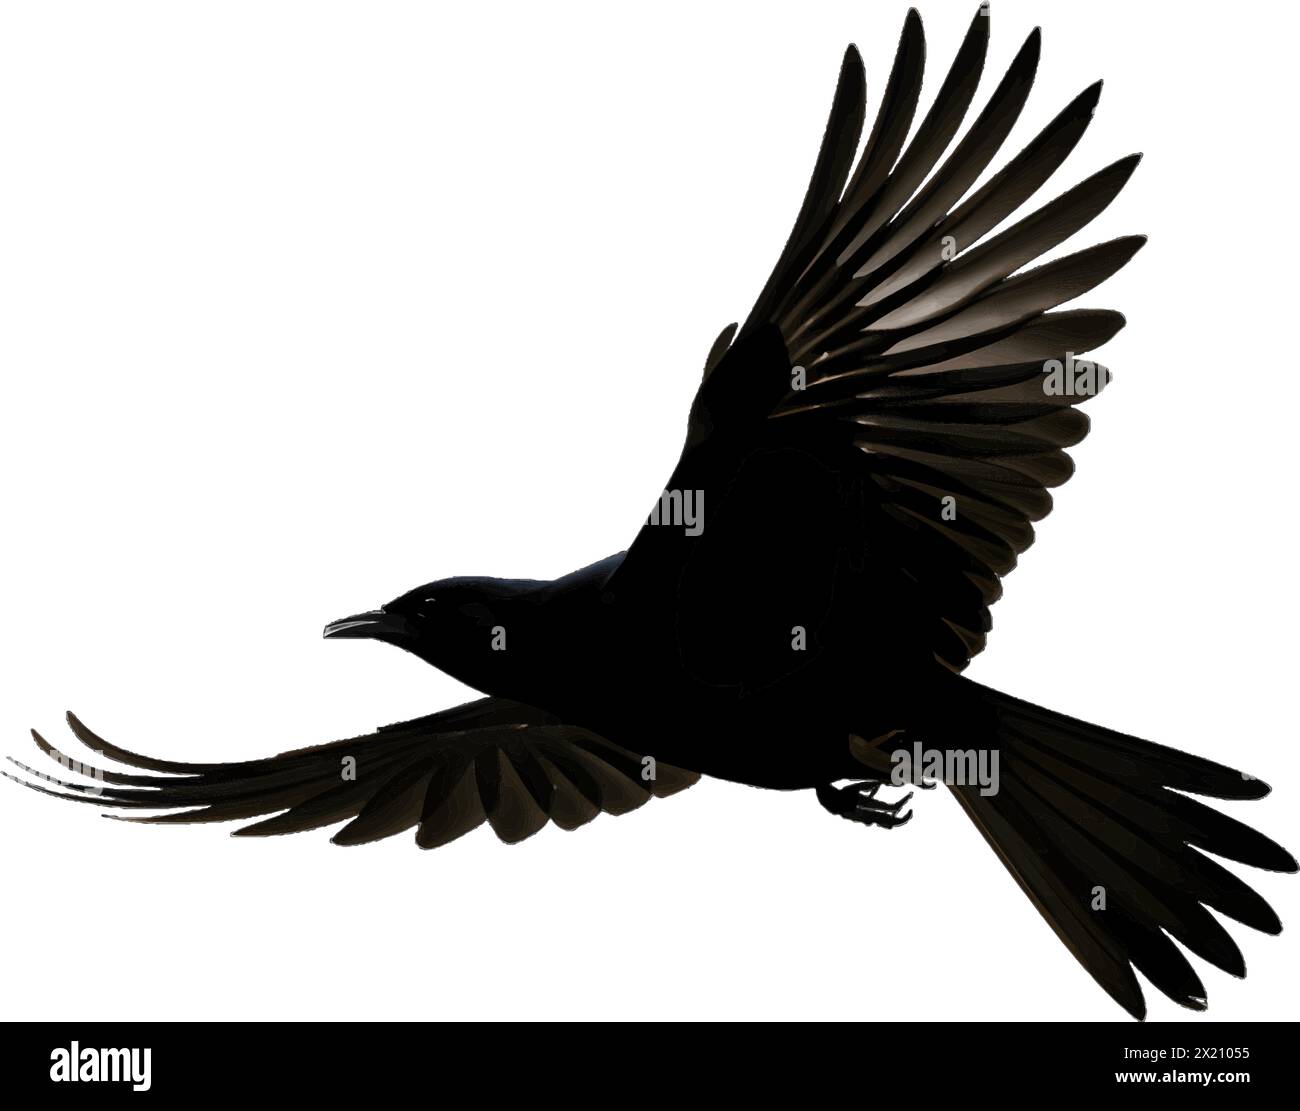 Immagine vettoriale di un uccello in volo, un corvo con silhouette nera su uno sfondo bianco e pulito, che cattura forme aggraziate. Illustrazione Vettoriale